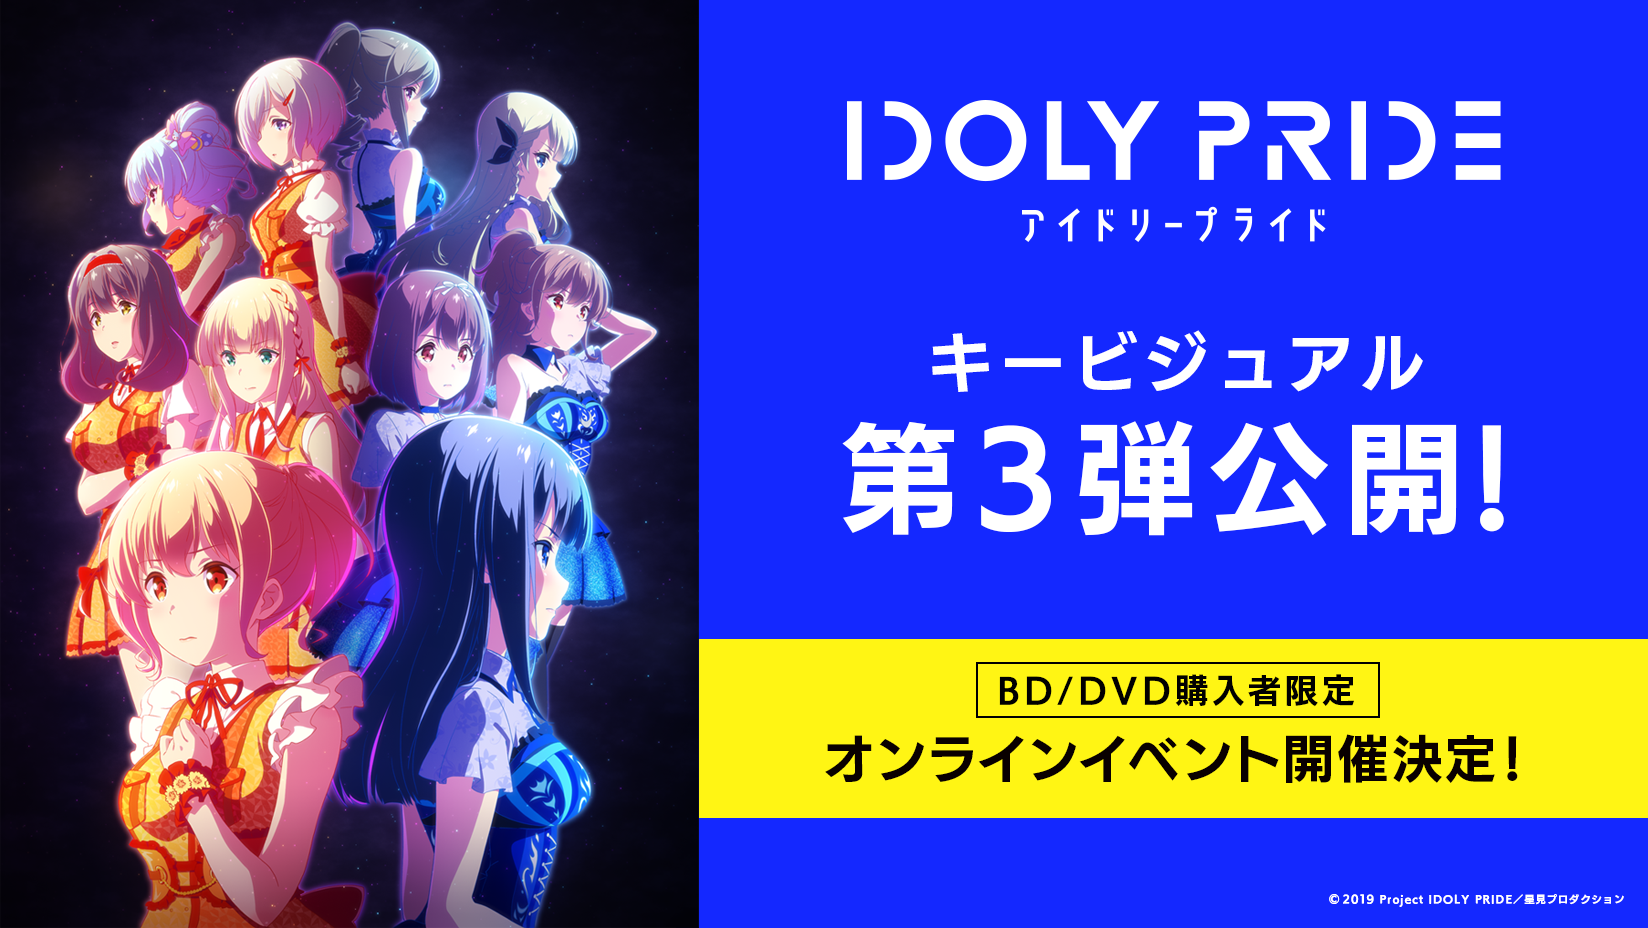 TVアニメ「IDOLY PRIDE  -アイドリープライド-」キービジュアル第3弾解禁！新グループ「サニーピース」と「月のテンペスト」のグループビジュアルも公開 |  株式会社サイバーエージェント